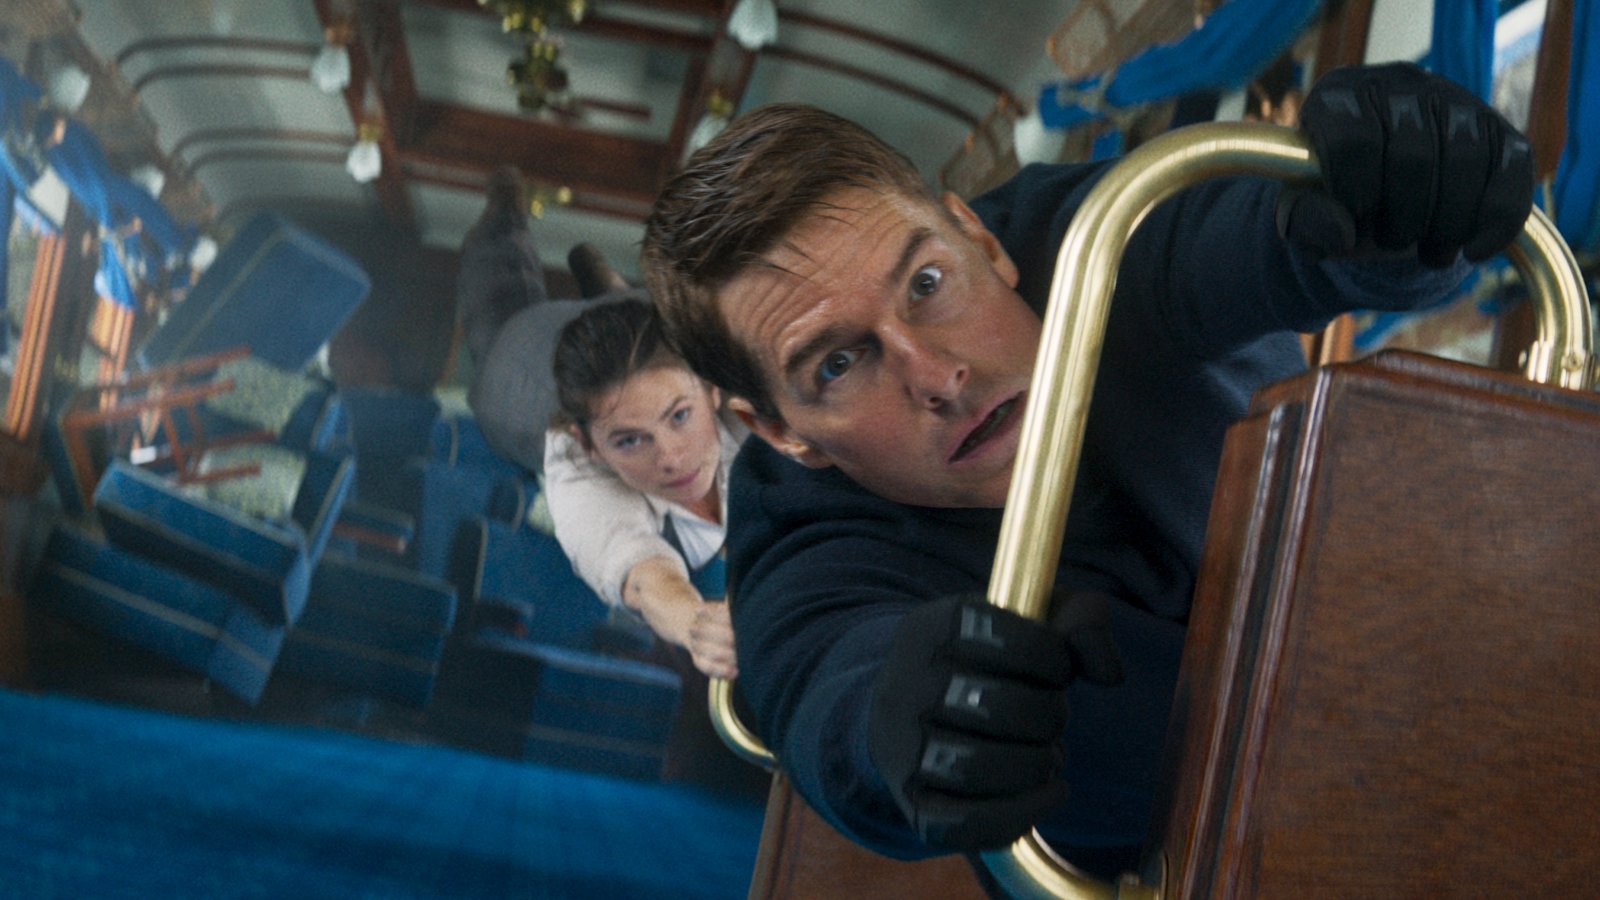 Mission: Impossible 8, la scena subacquea supererà tutti i precedenti stunt acquatici di Tom Cruise